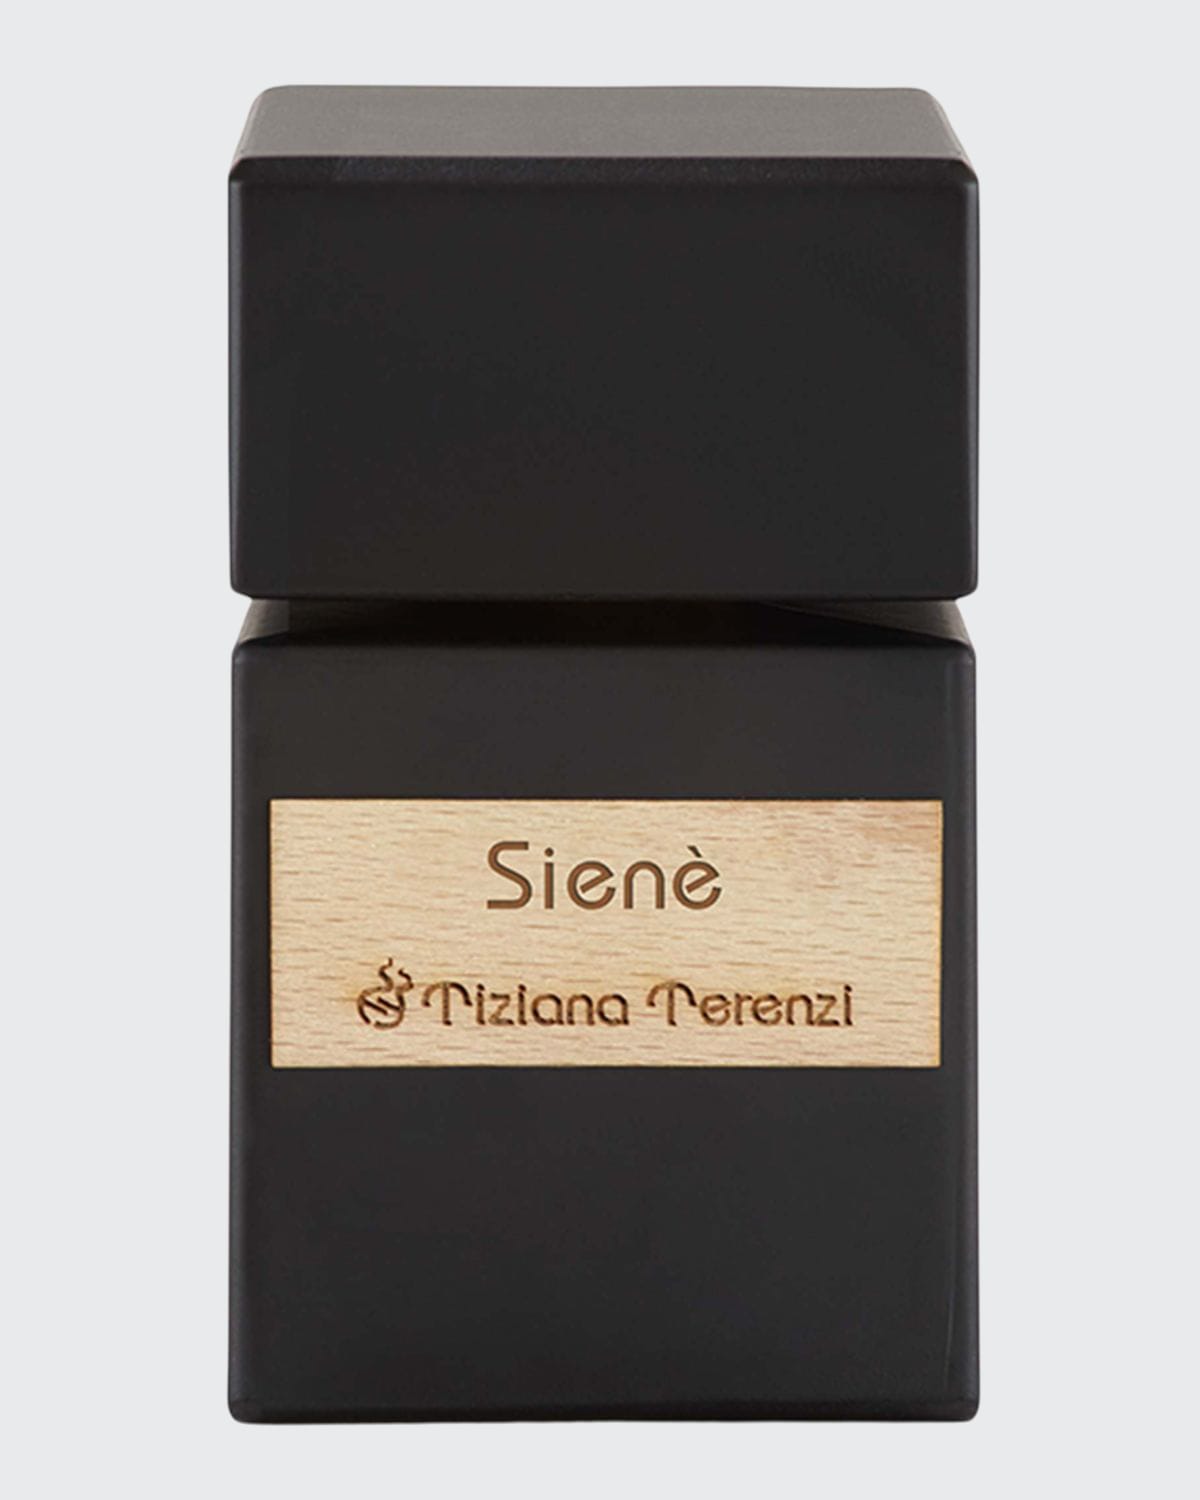 Siene Extrait de Parfum, 3.4 oz.